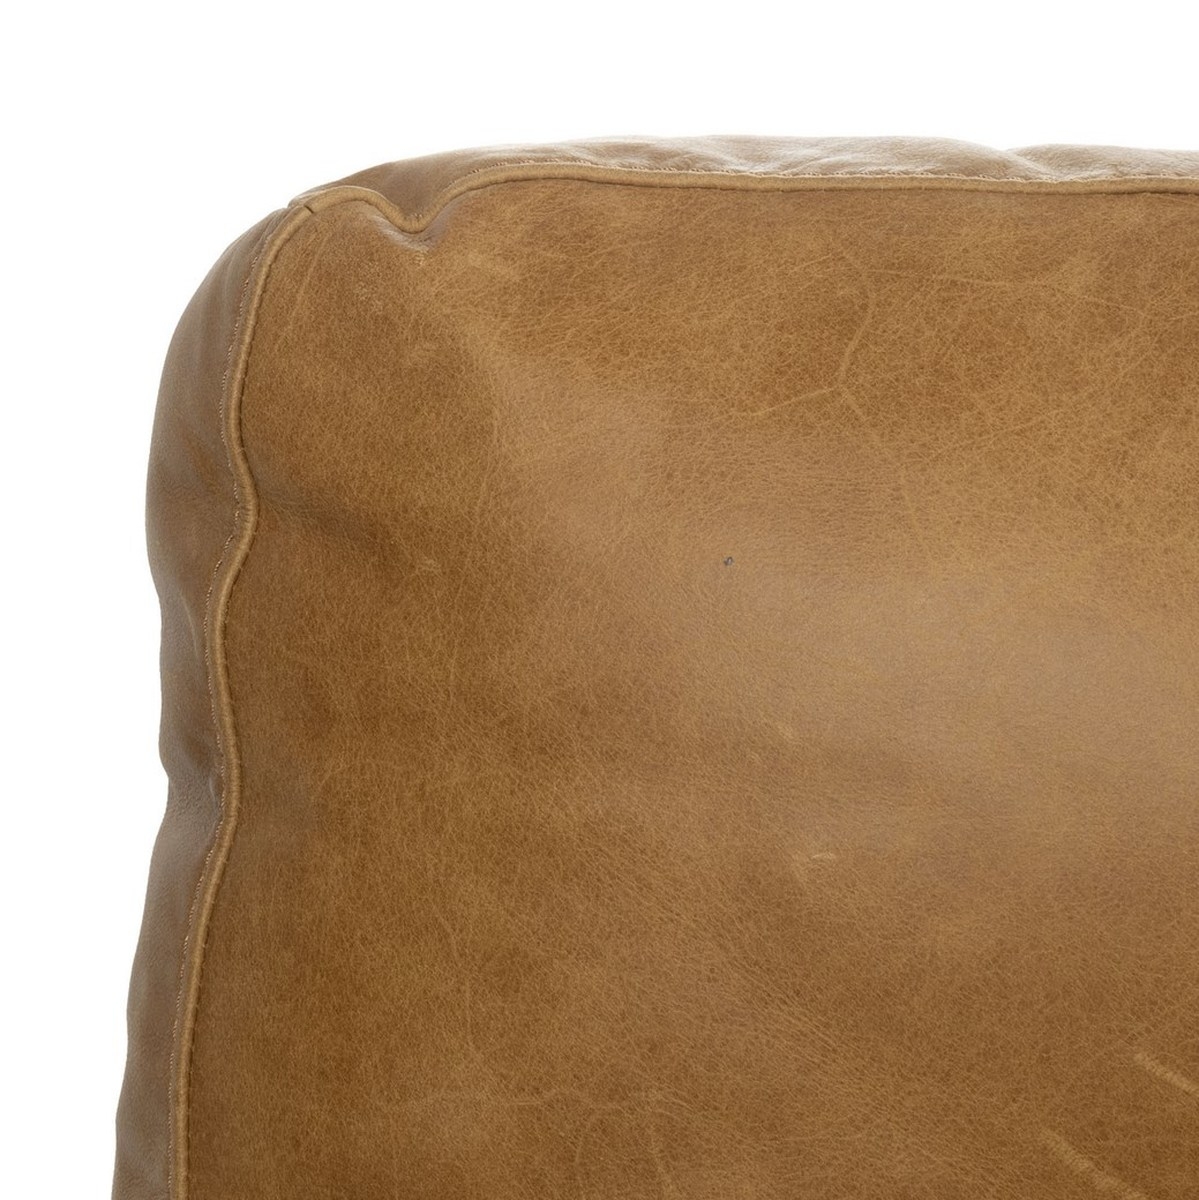 Osma Italian Leather Sofa, Caramel - Image 10